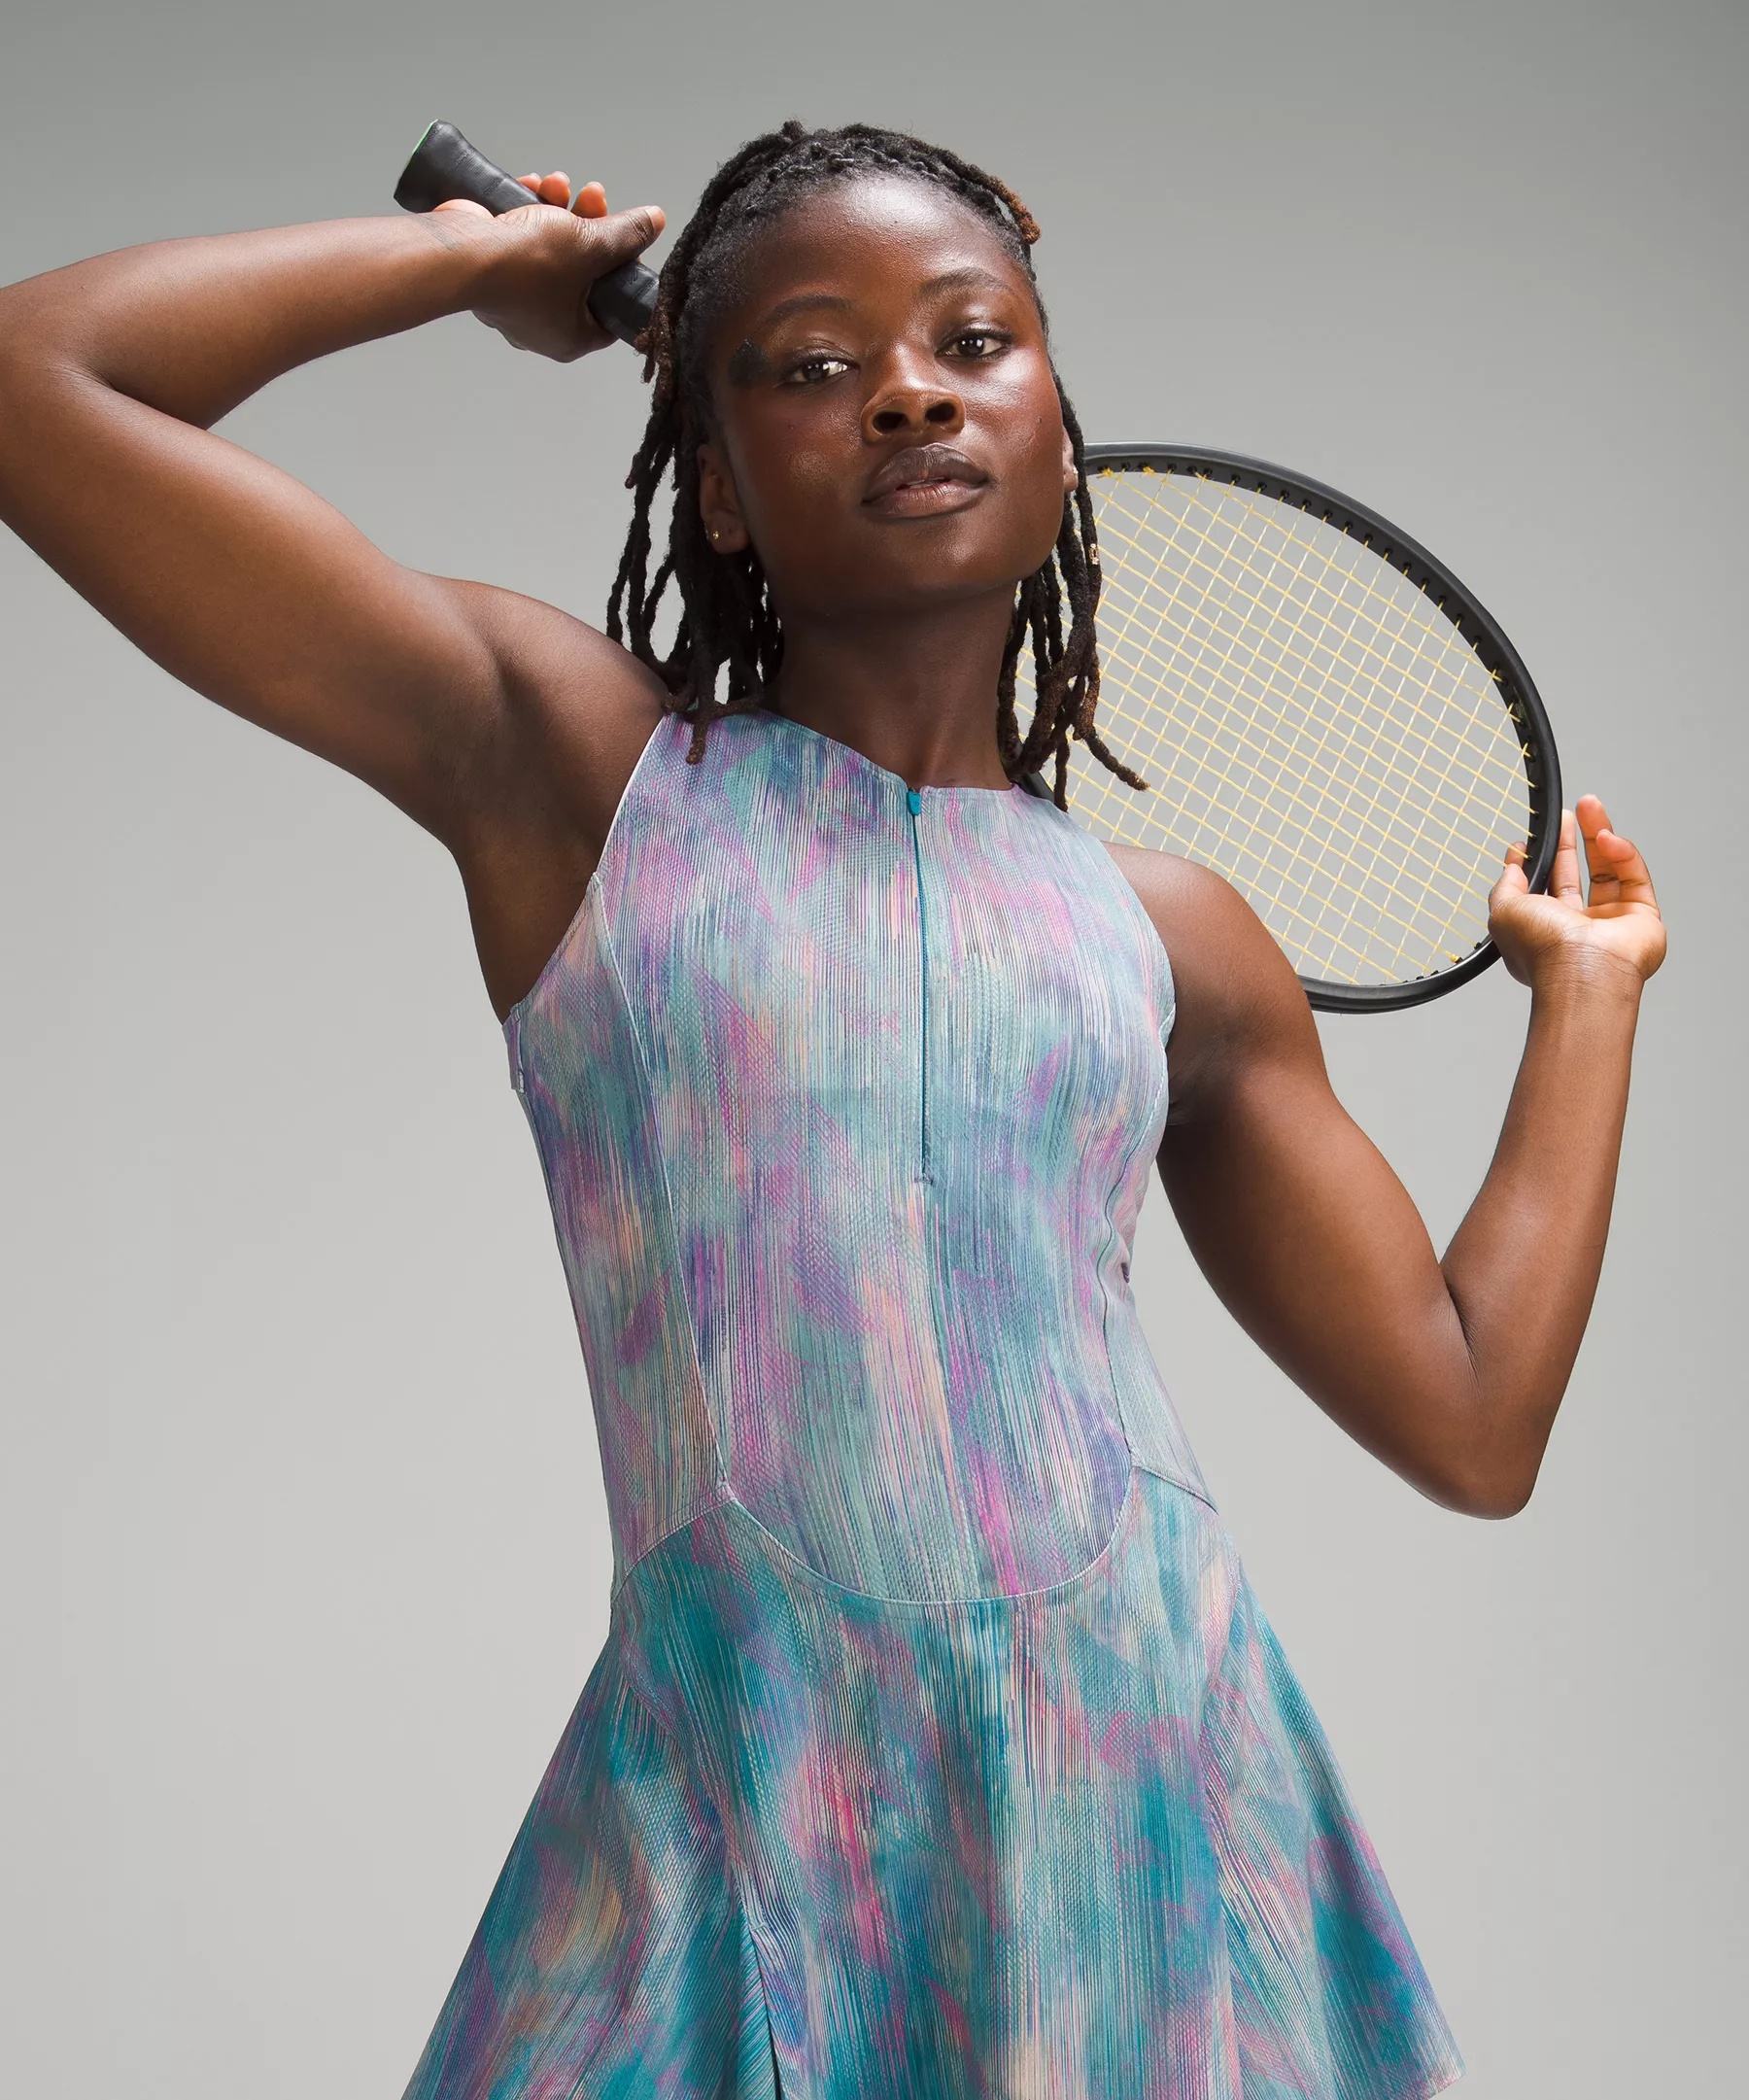 Everlux Short-Lined Tennis Tank Top Dress 6" - 6